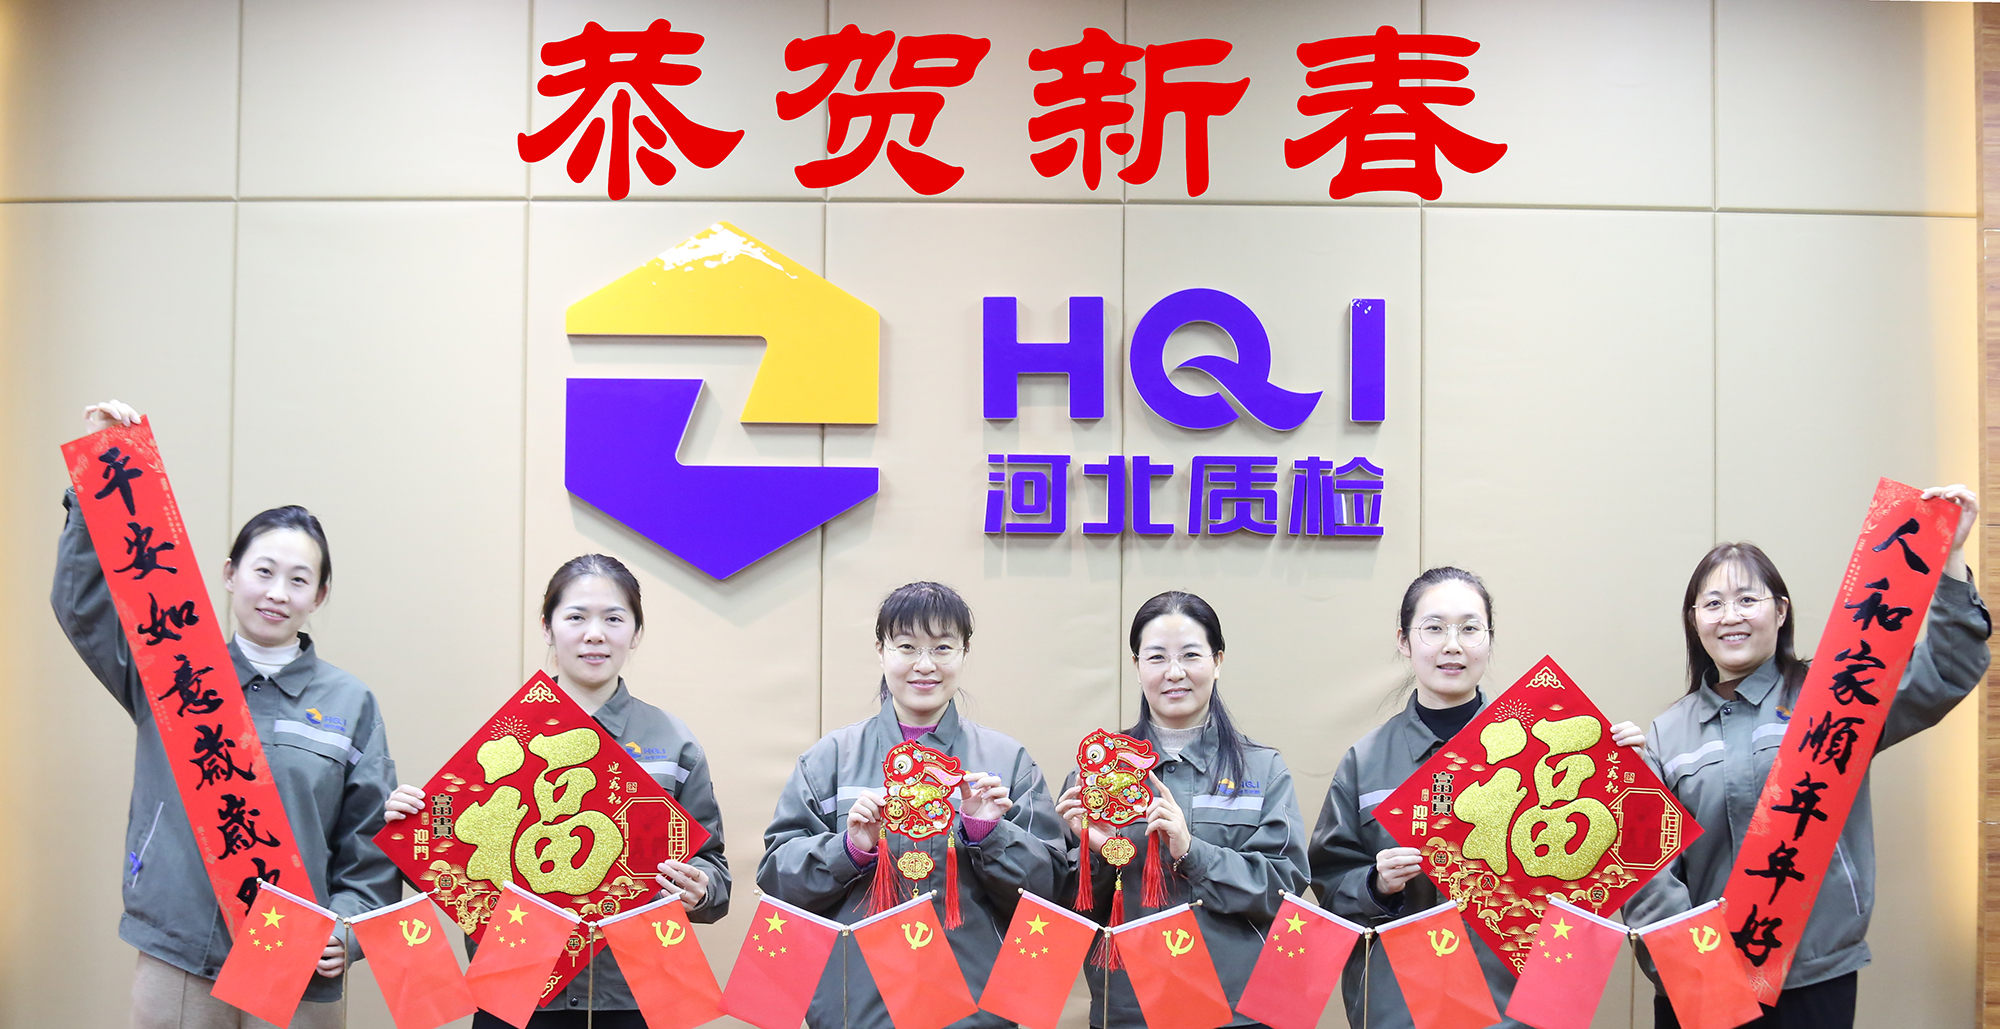 河北省质检院恭祝广大客户春节快乐 ！